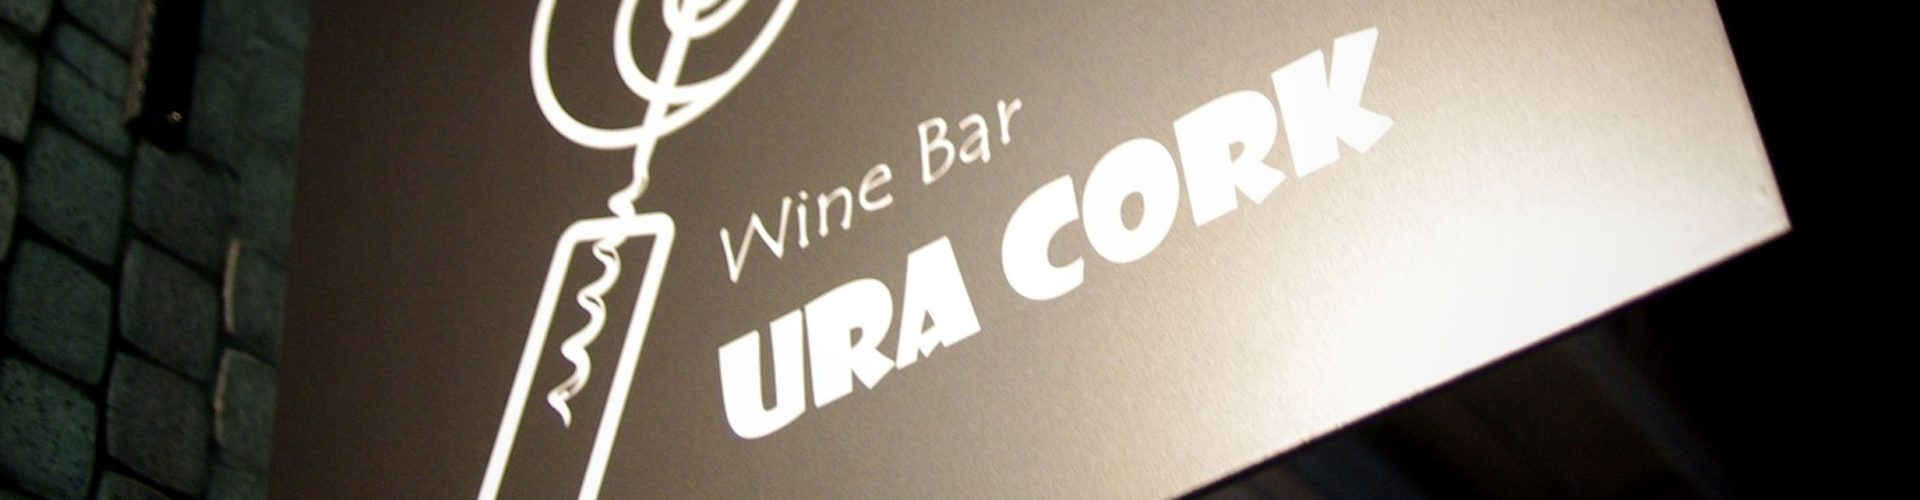 最強寒波にマケズ、Wine Bar URACORK元気に営業いたします♪